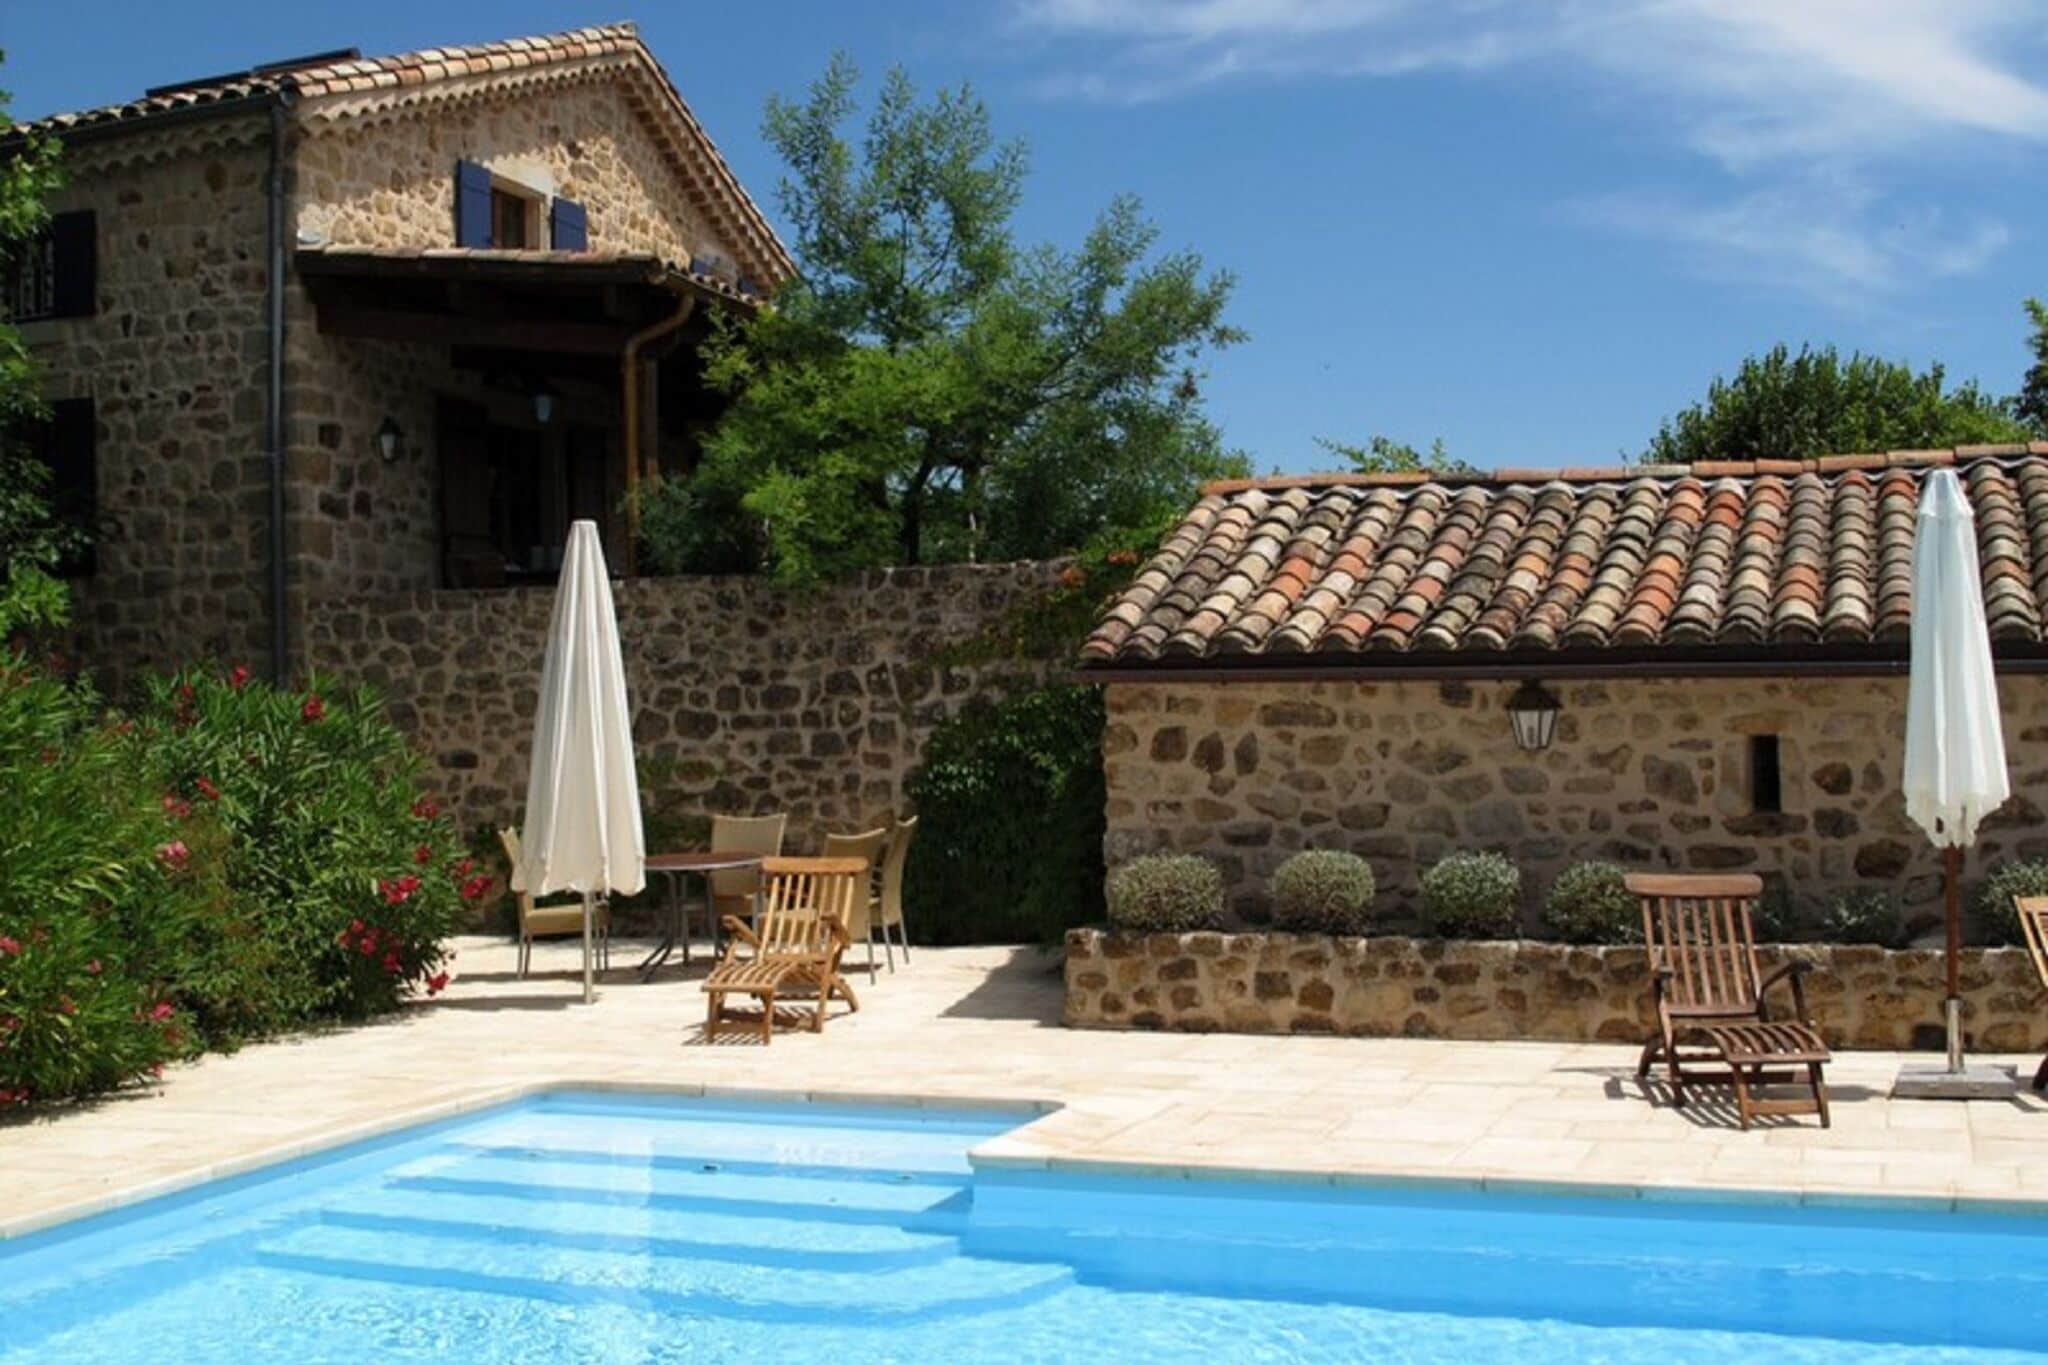 Stenen vakantiehuis in Rosières met een gedeeld zwembad